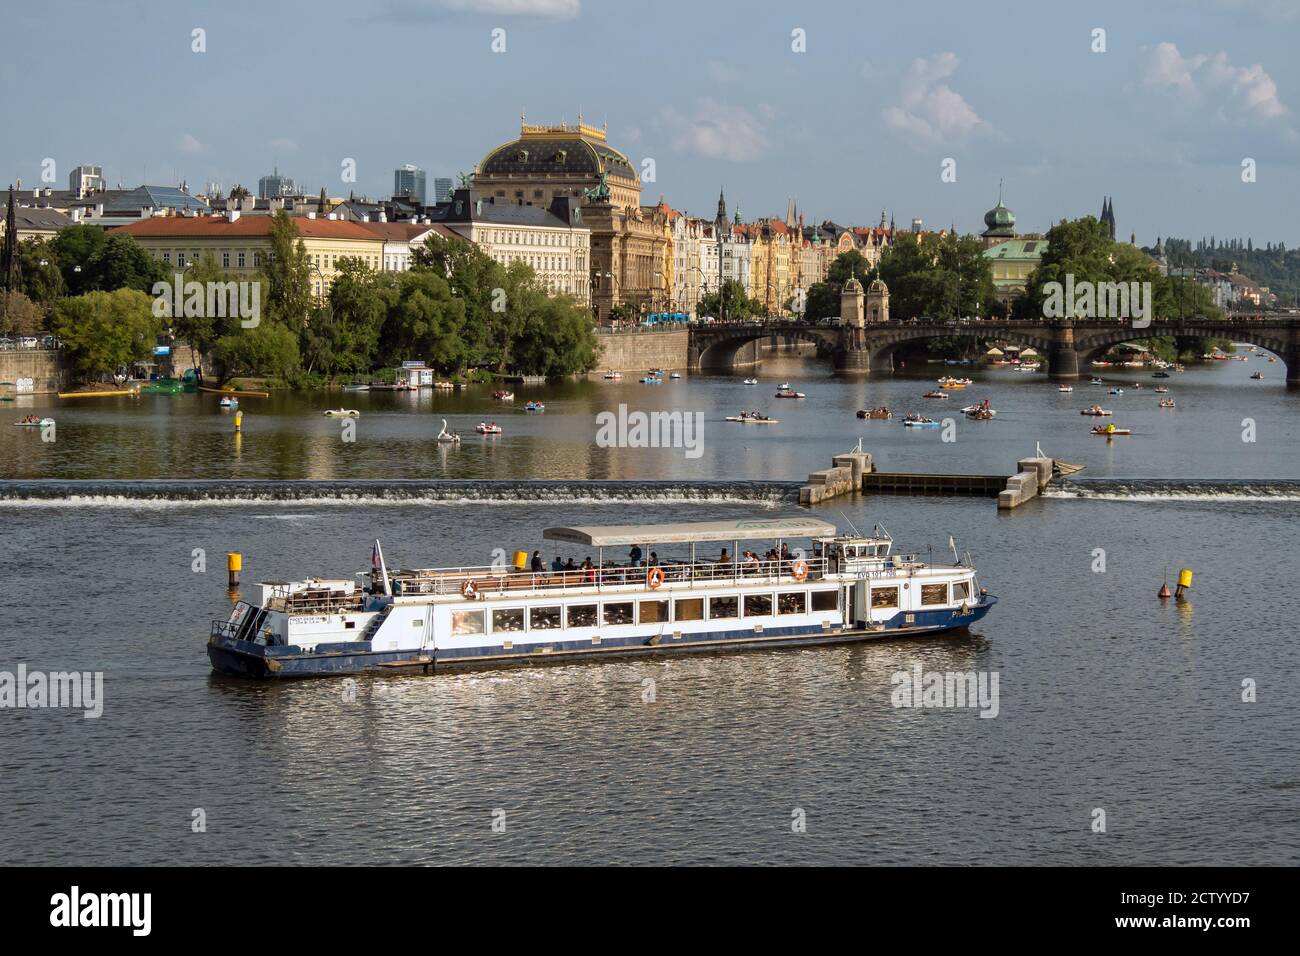 PRAGUE, RÉPUBLIQUE TCHÈQUE : bateau touristique sur la Vltava avec le pont de la légion et le théâtre national (Narodni divadlo) en arrière-plan Banque D'Images